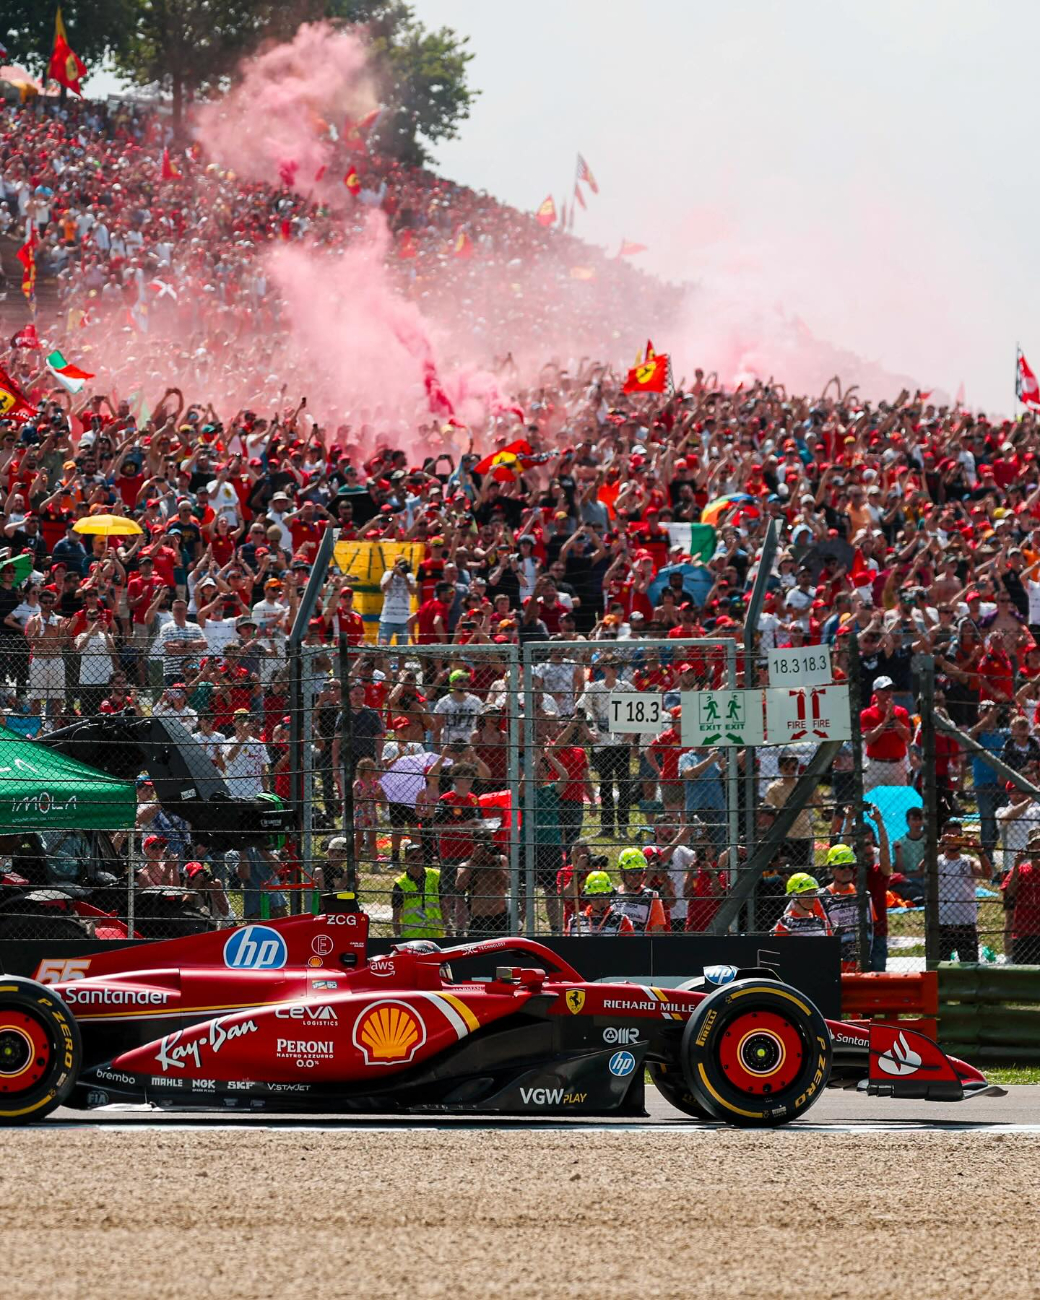 Este domingo, se llevará a cabo la el Gran Premio de España, el Circuito Barcelona-Catalunya